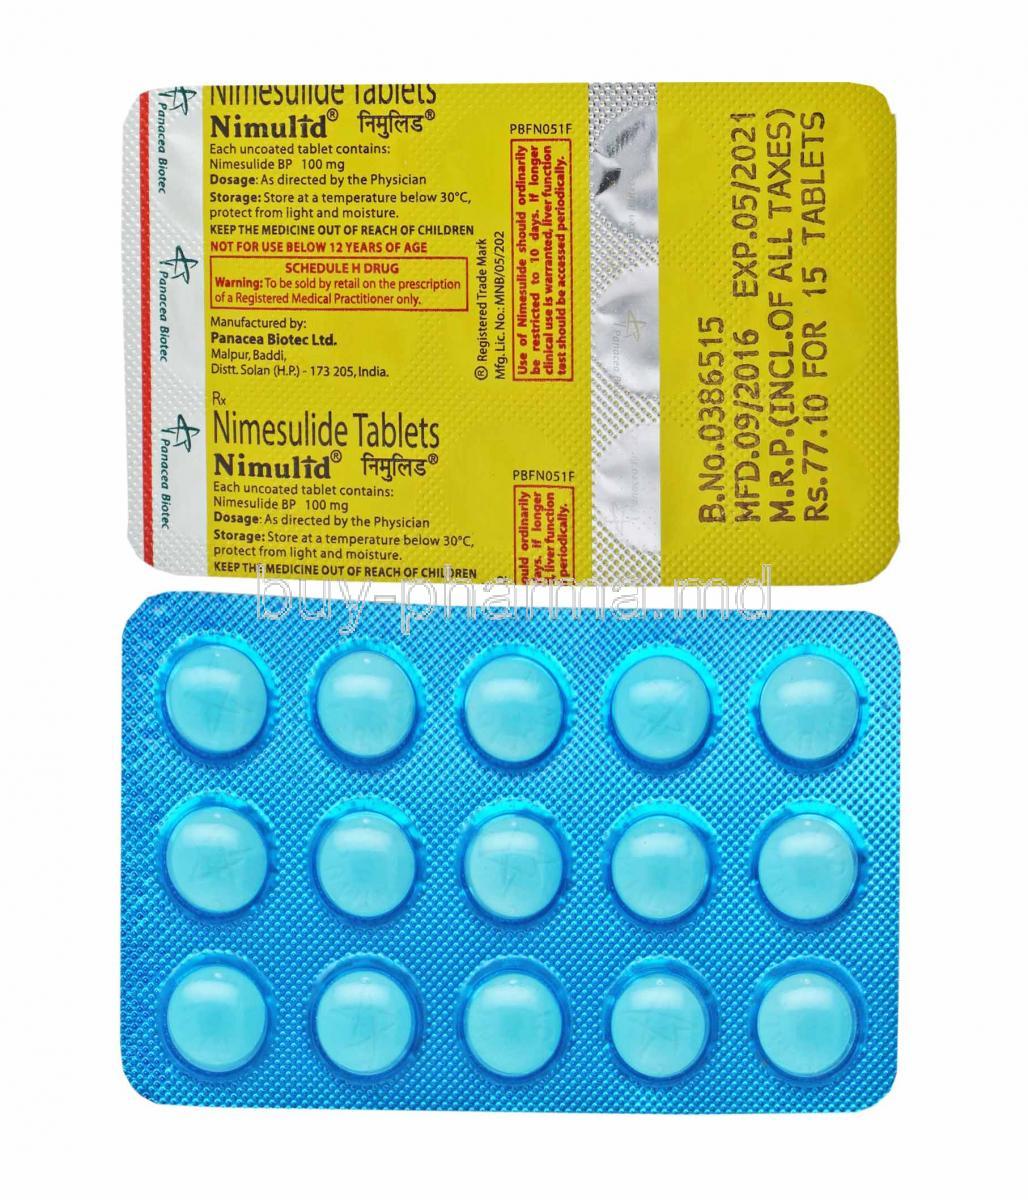 Nimulid, Nimesulide tablets